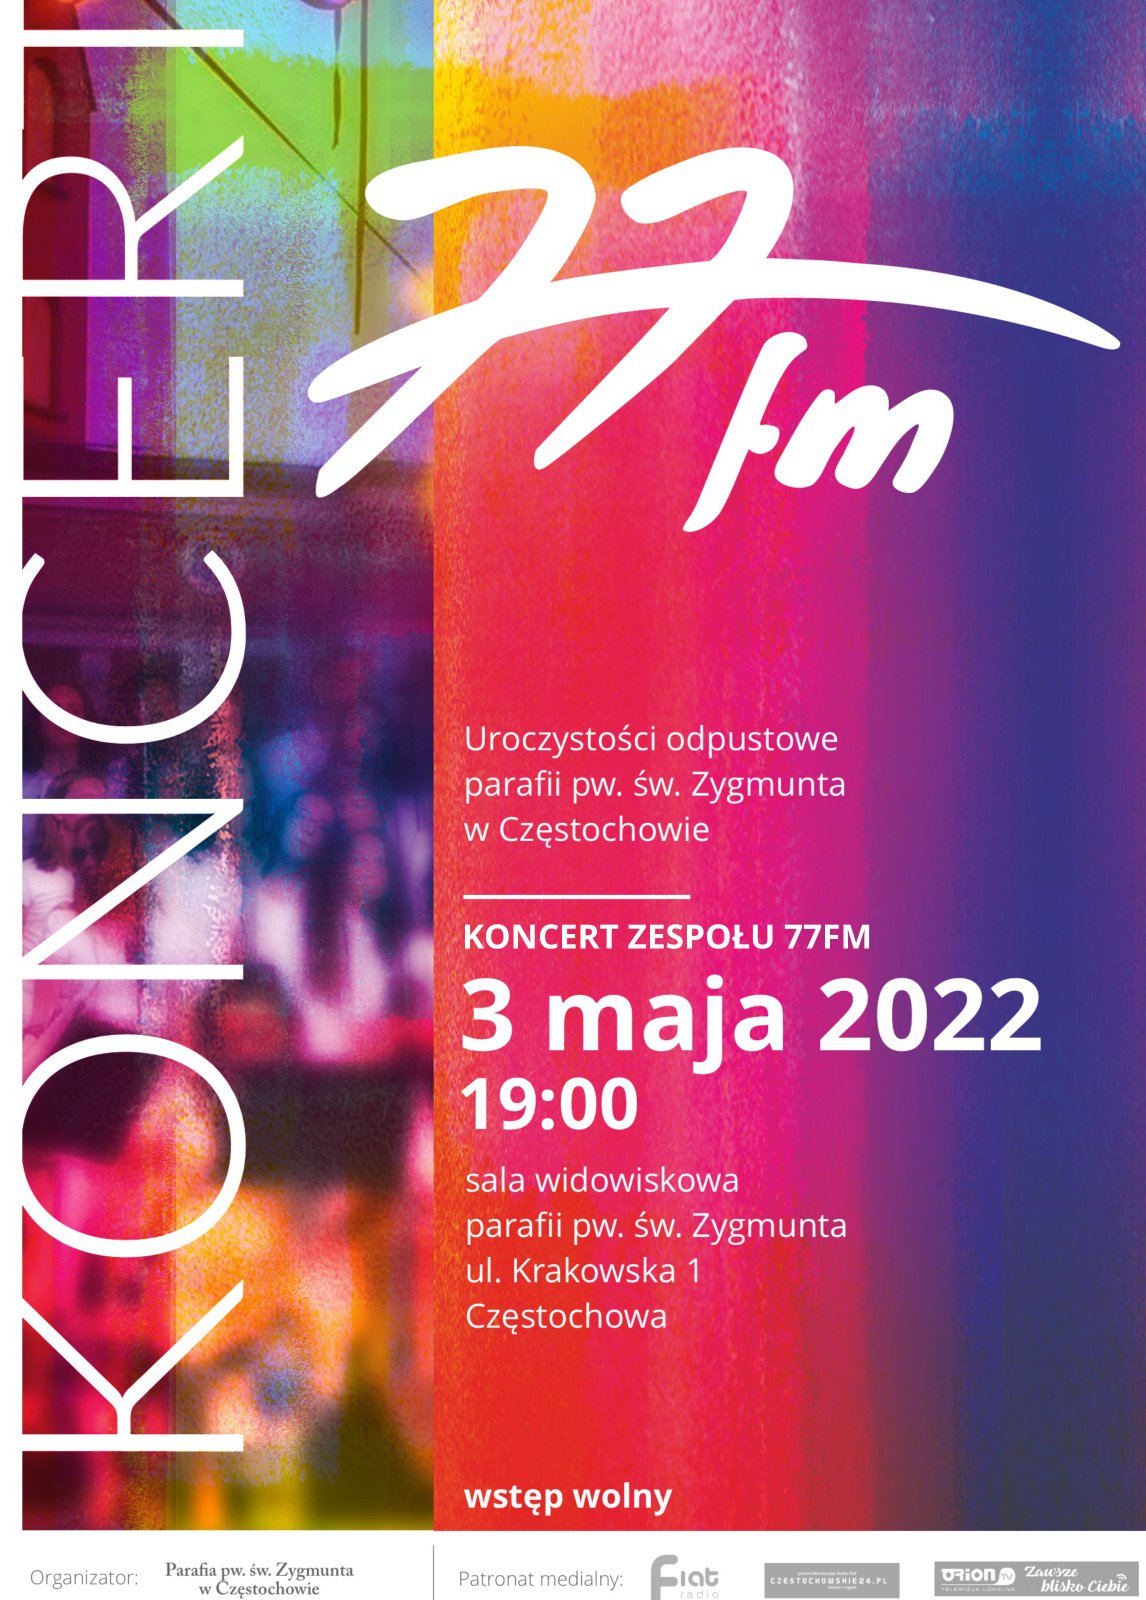 plakat koncertu 77FM, kościół św. Zygmunta, 3 maja 2022 godzina 19:00